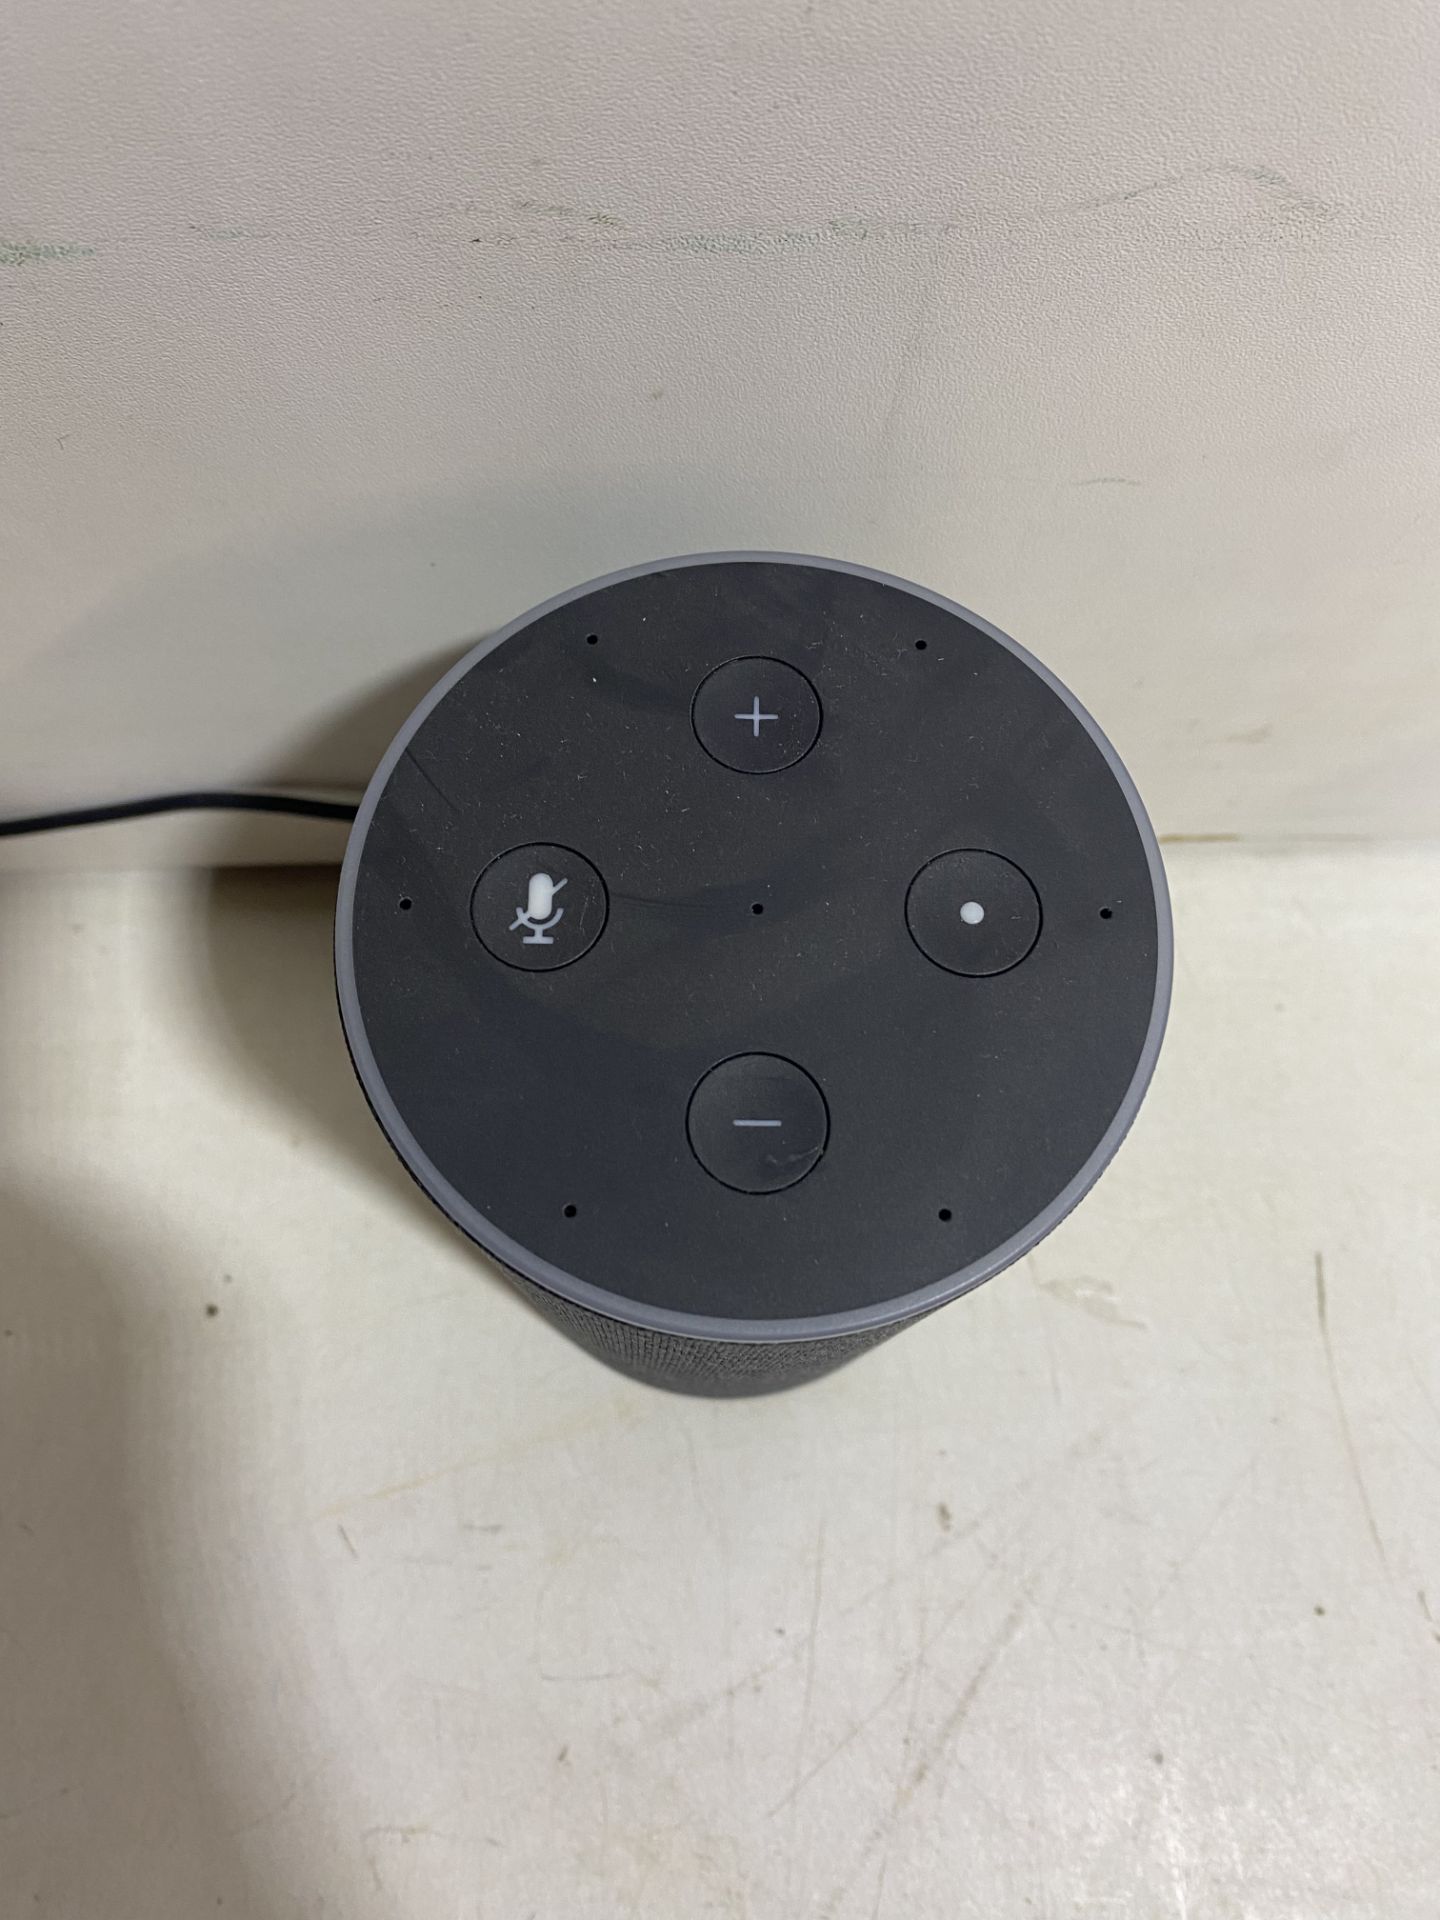 Amazon Echo Smart Speaker With Alexa - Image 3 of 6